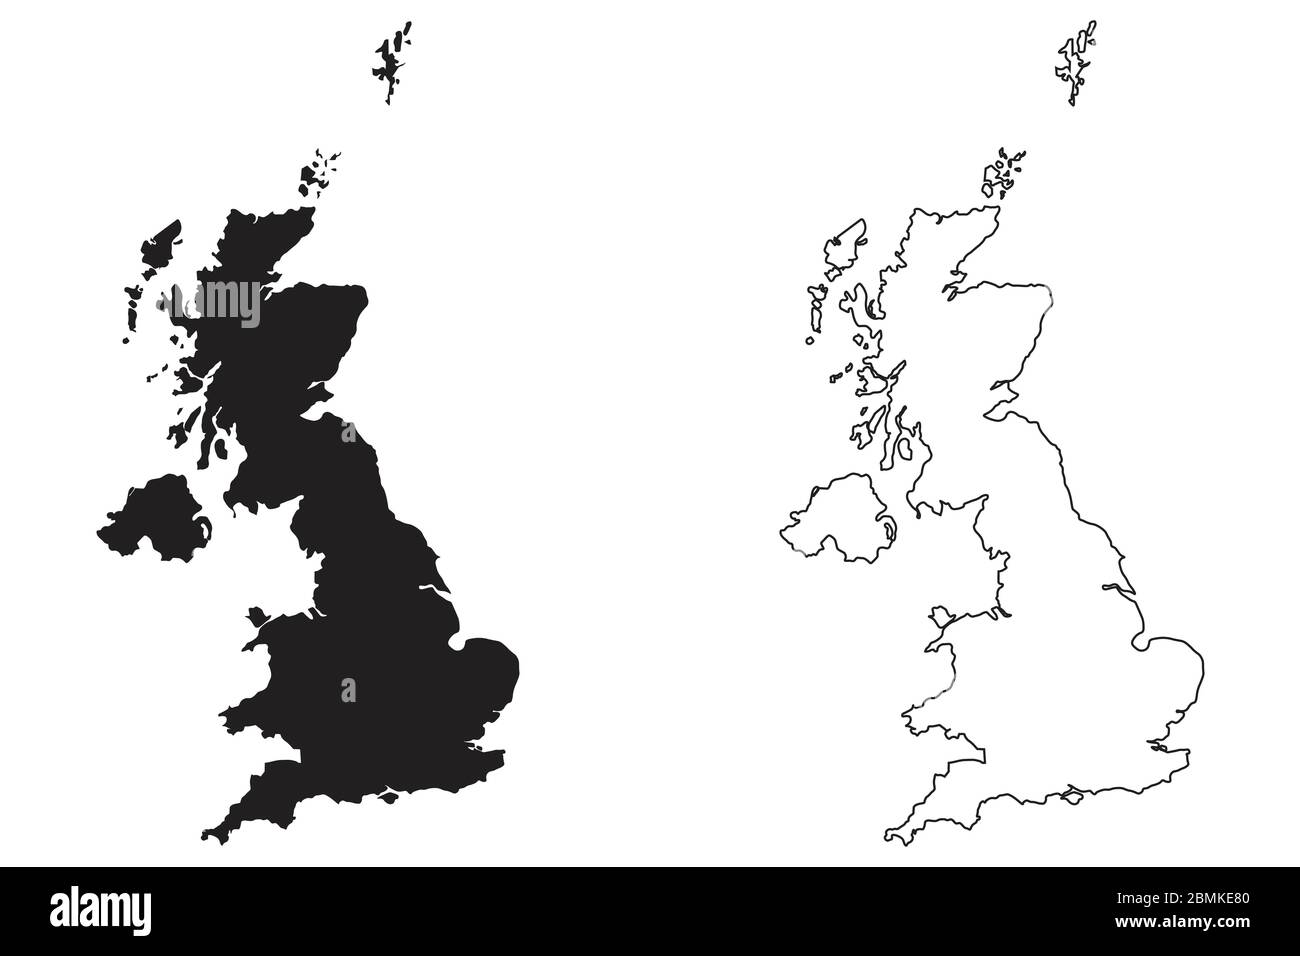 Regno Unito Gran Bretagna Paese Mappa. Silhouette e profilo neri isolati su sfondo bianco. Vettore EPS Illustrazione Vettoriale